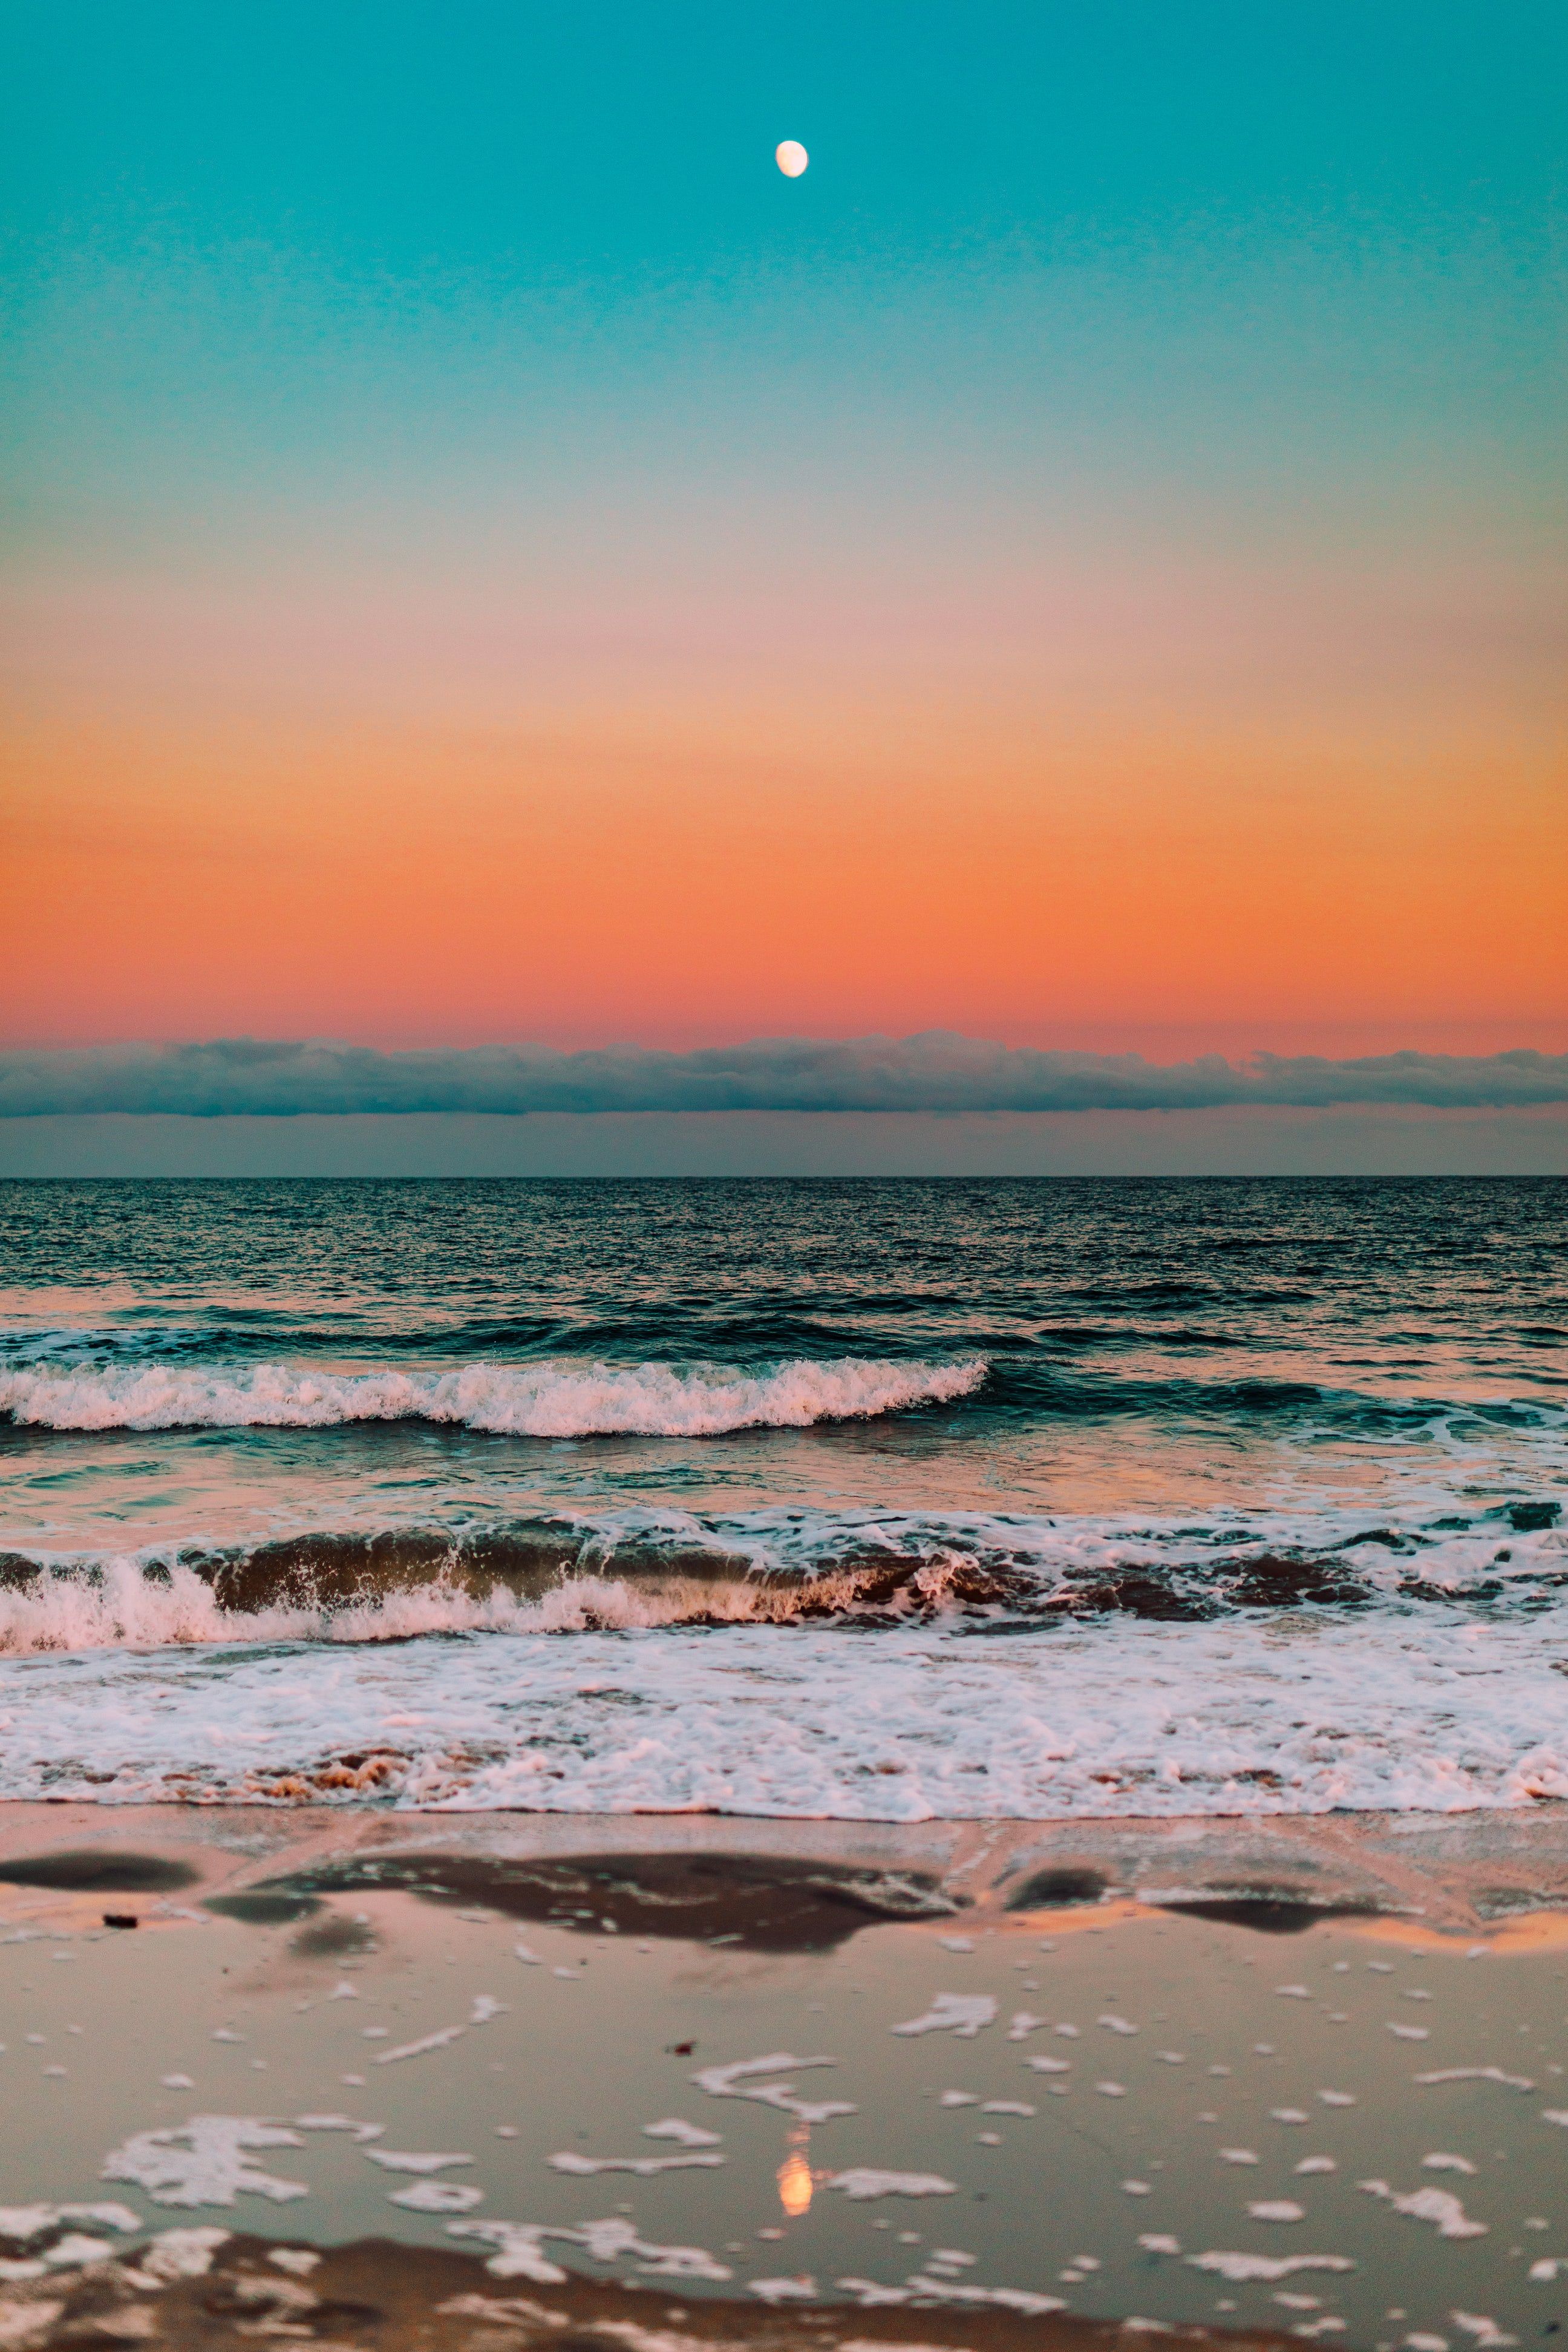 Hình Nền Sóng Biển: Hãy tận hưởng hình nền sóng biển đẹp này để cảm nhận sự năng động của biển. Sóng biển là biểu tượng của sự thăng hoa và tinh thần quyết tâm. Hãy sử dụng hình nền sóng biển để thể hiện sự đam mê và sức mạnh bên trong bạn.